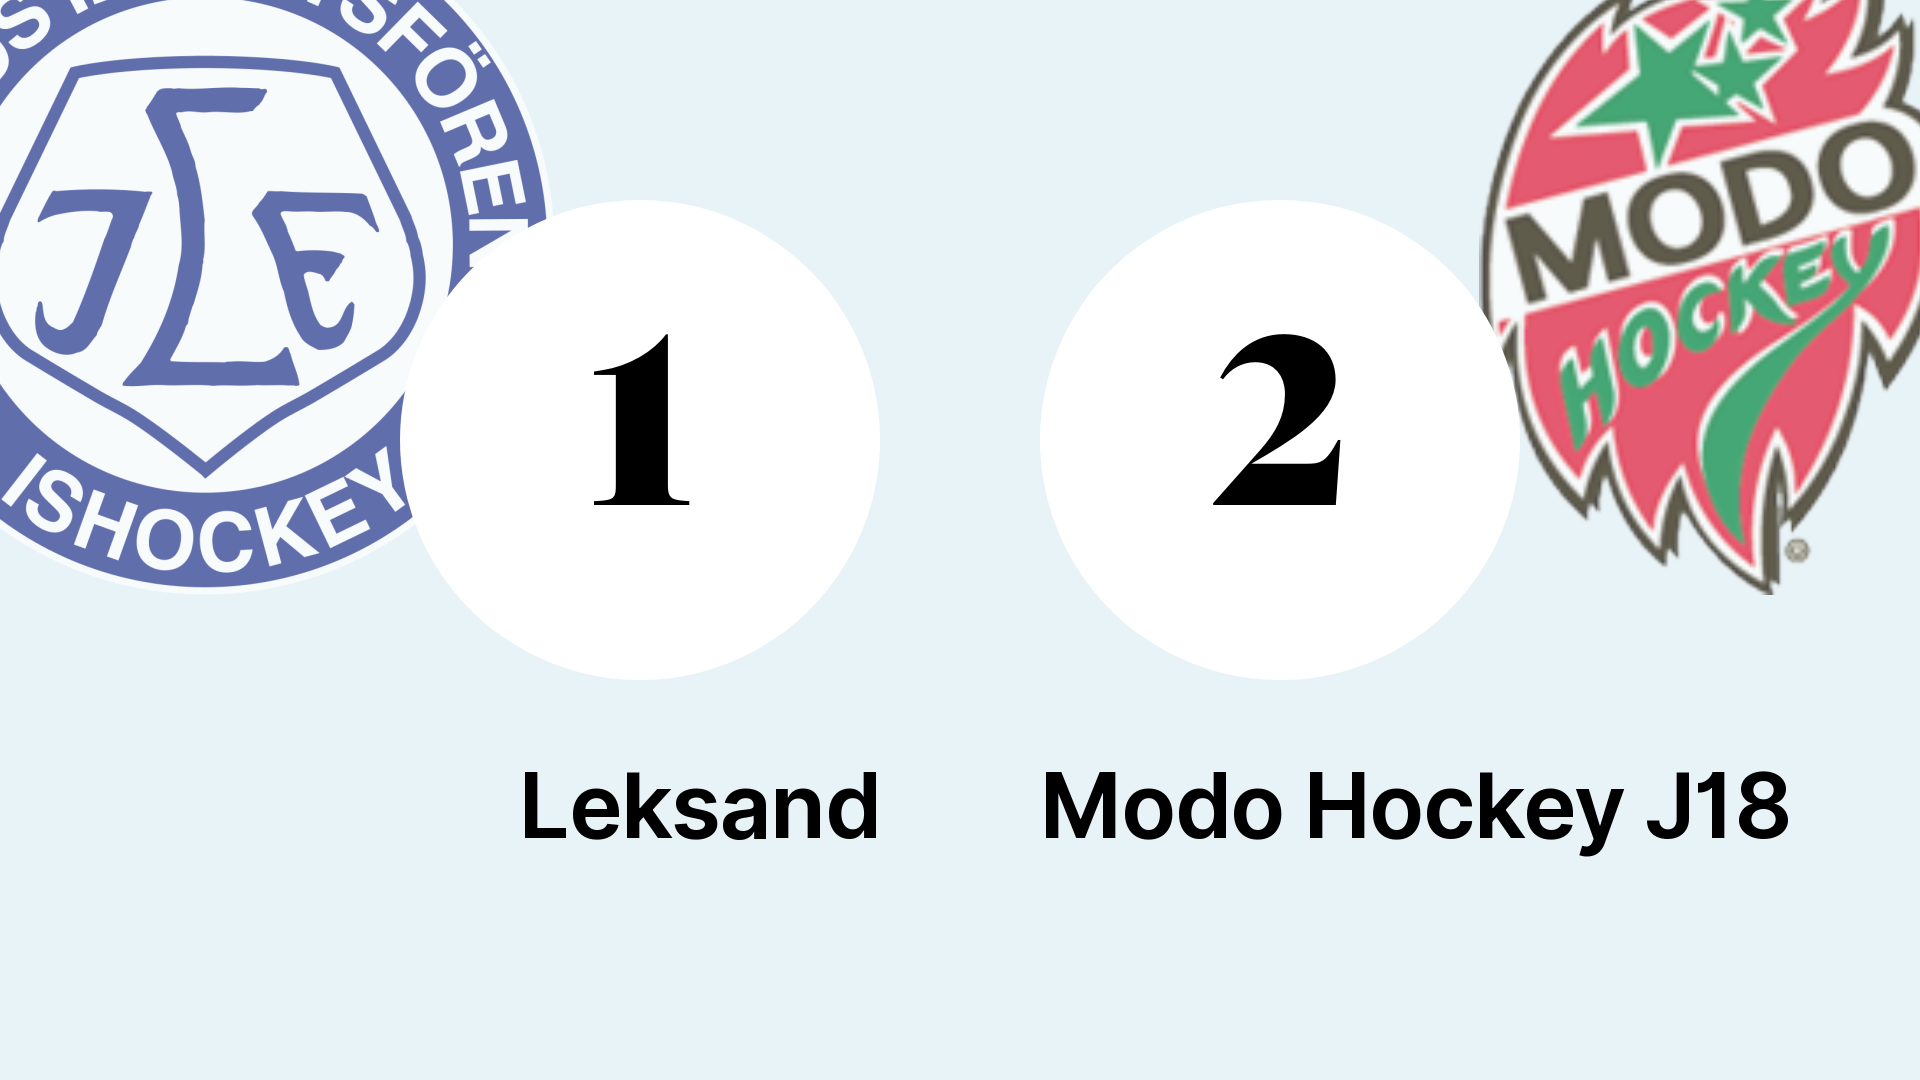 Modo: Likaläge i matchserien efter Modo Hockey J18:s seger mot Leksand